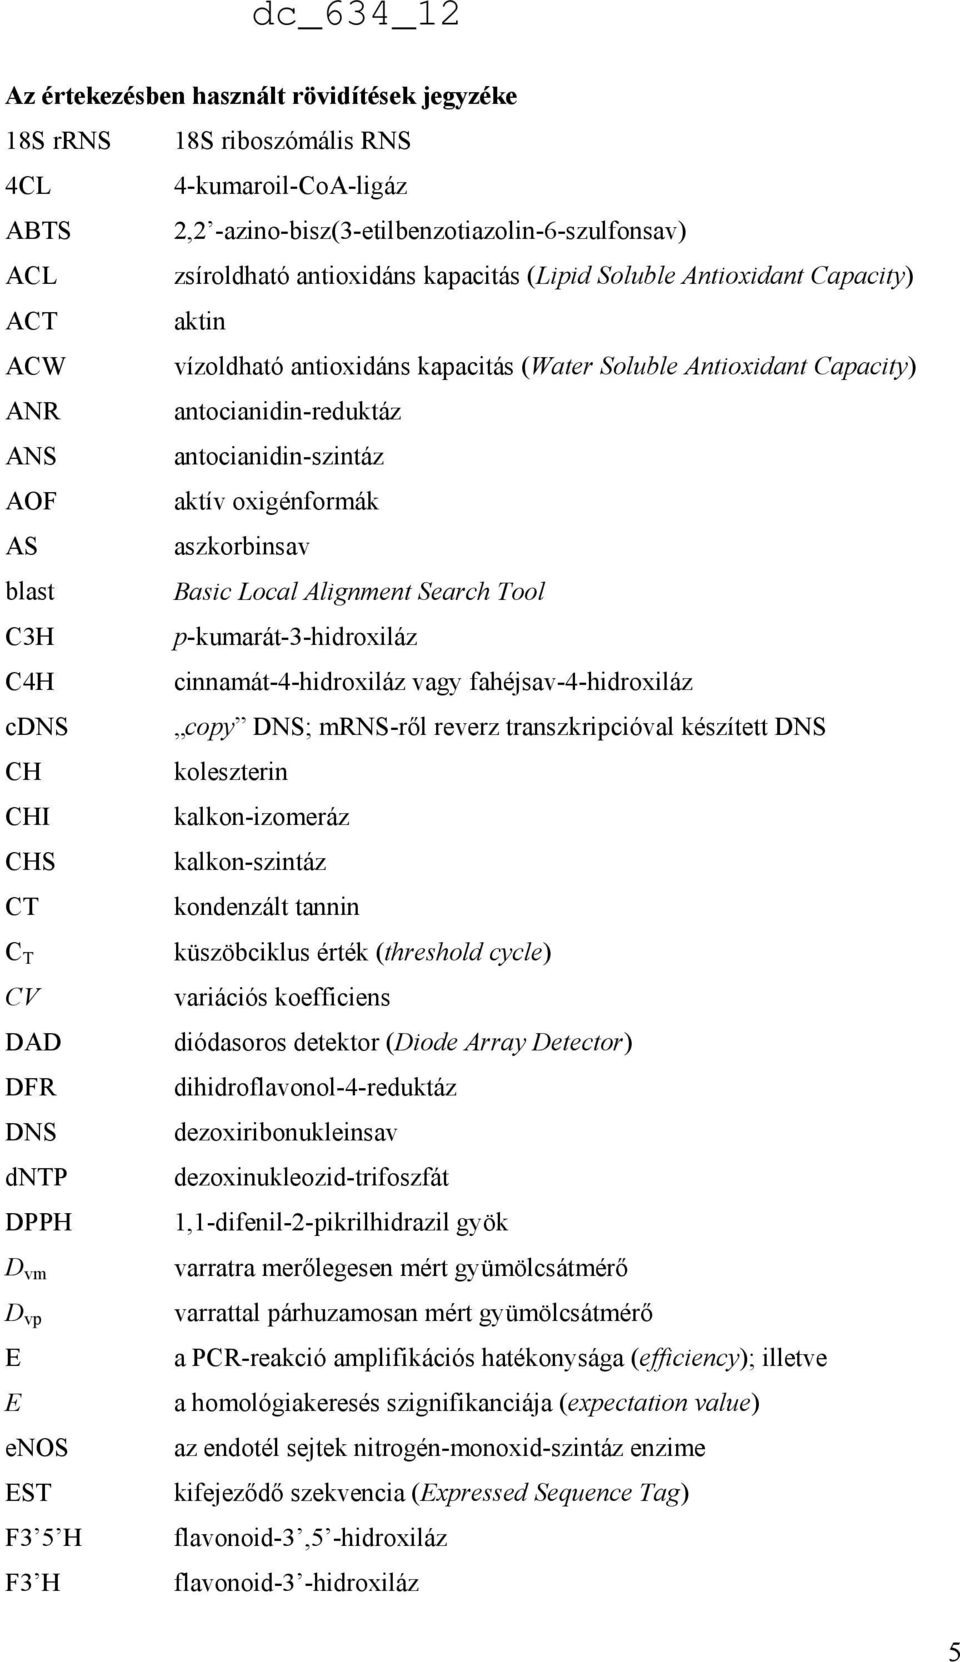 aszkorbinsav blast Basic Local Alignment Search Tool C3H p-kumarát-3-hidroxiláz C4H cinnamát-4-hidroxiláz vagy fahéjsav-4-hidroxiláz cdns copy DNS; mrns-ről reverz transzkripcióval készített DNS CH